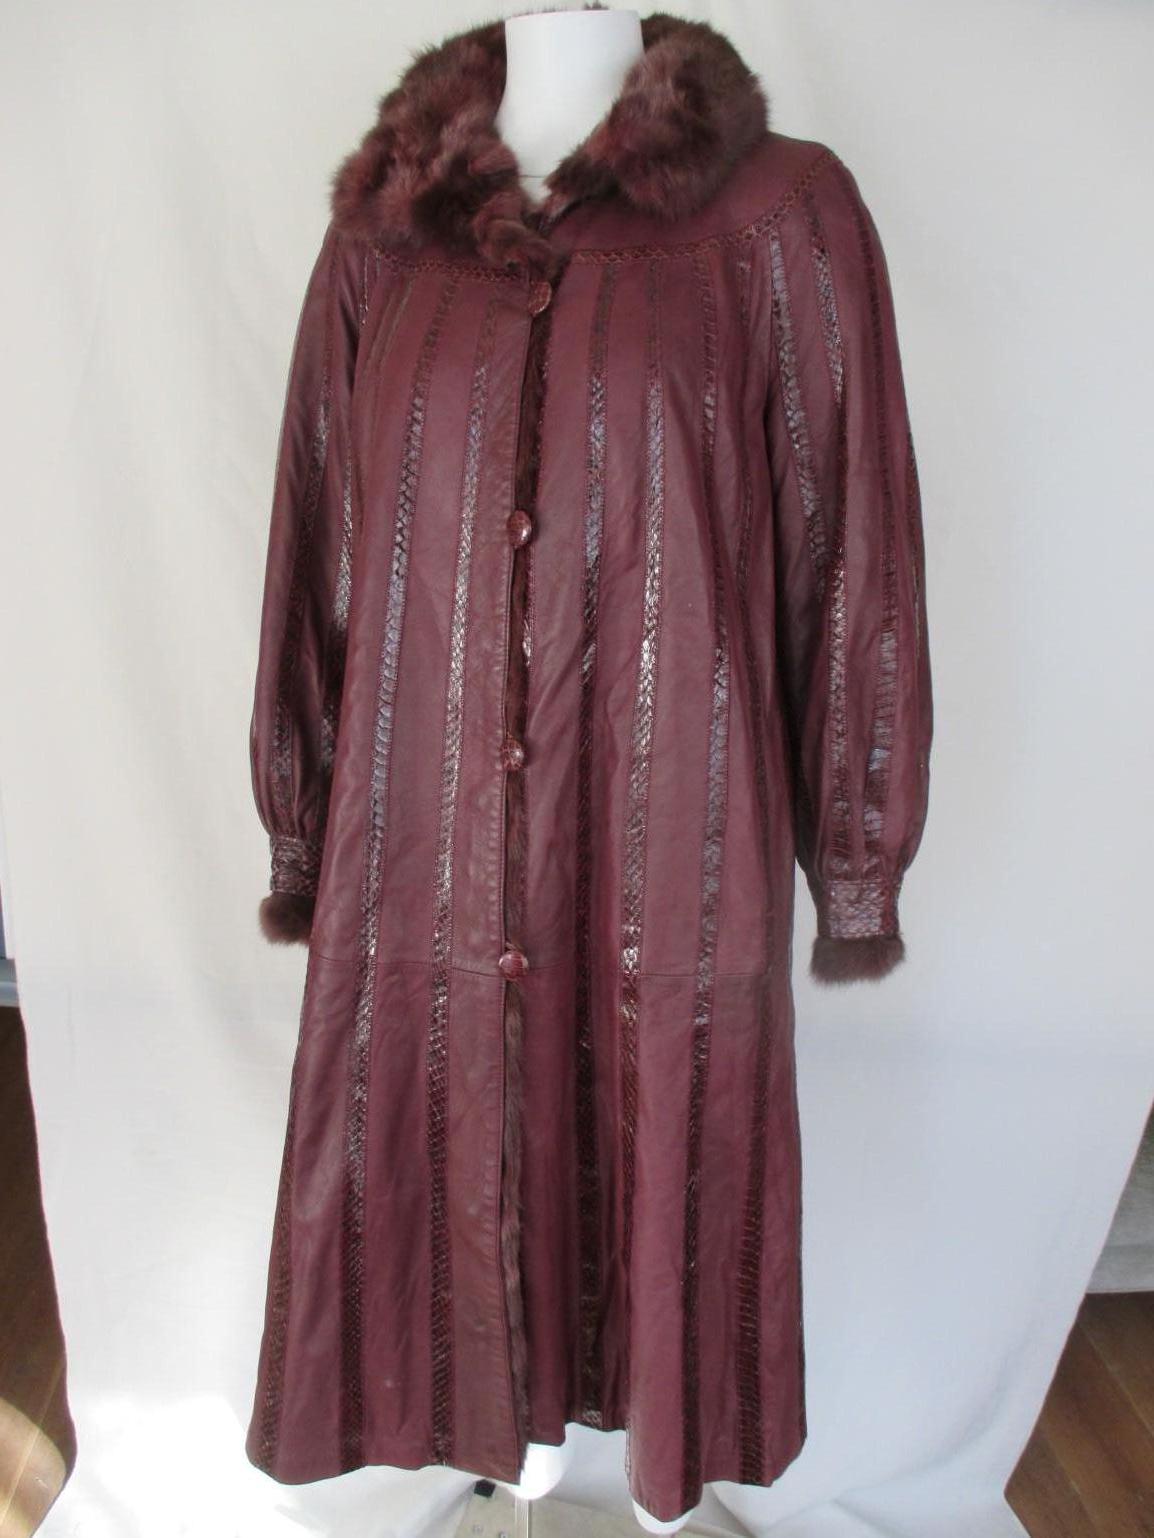 Dieser Vintage-Mantel ist aus hochwertigem, weichem Pelz und Leder mit Einsätzen aus Schlangenhaut gefertigt, kann von beiden Seiten getragen und mit Knöpfen getrennt werden.
3 Anstriche in einem!  Ein Doppelmantel und 2 Einzelmäntel, die sehr